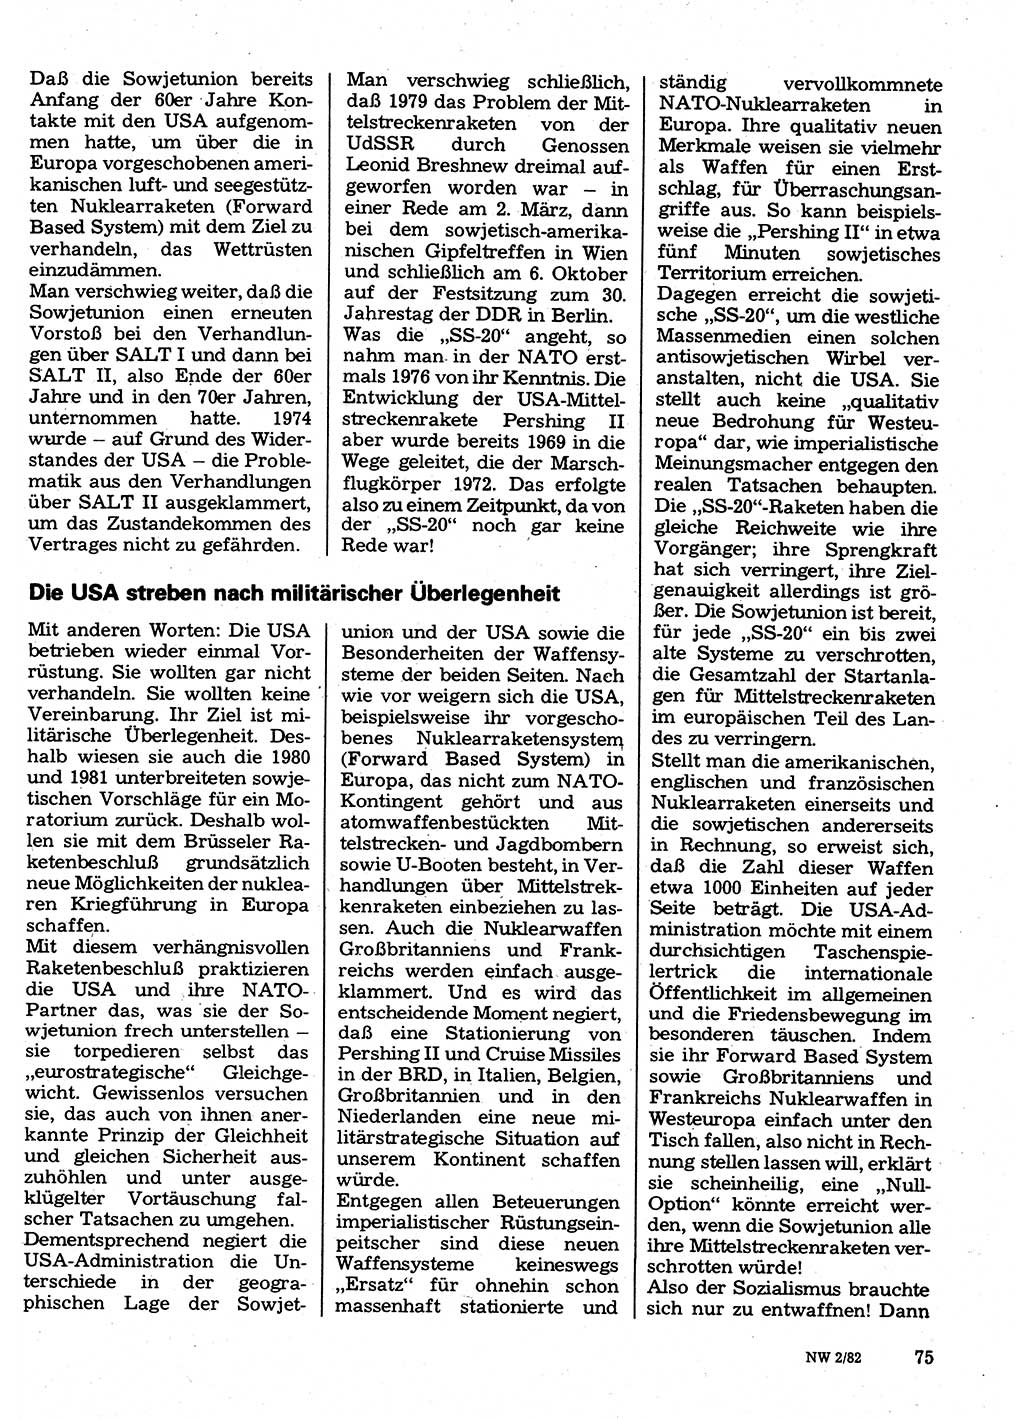 Neuer Weg (NW), Organ des Zentralkomitees (ZK) der SED (Sozialistische Einheitspartei Deutschlands) für Fragen des Parteilebens, 37. Jahrgang [Deutsche Demokratische Republik (DDR)] 1982, Seite 75 (NW ZK SED DDR 1982, S. 75)